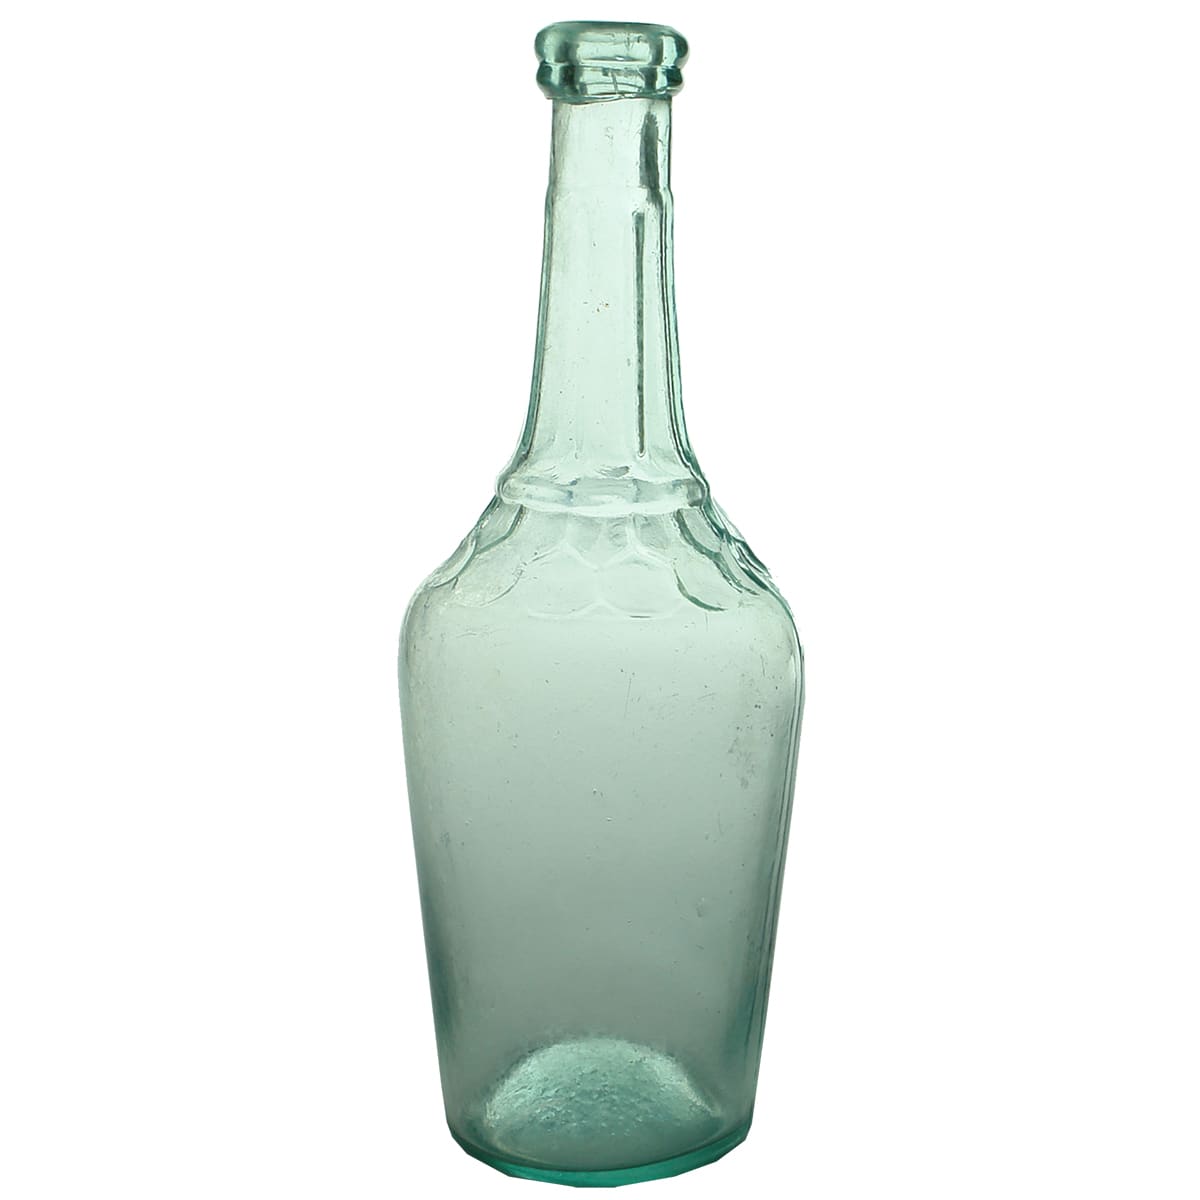 Vinegar. Ornate jug shaped bottle with petalled shoulder. Aqua. 26 oz.